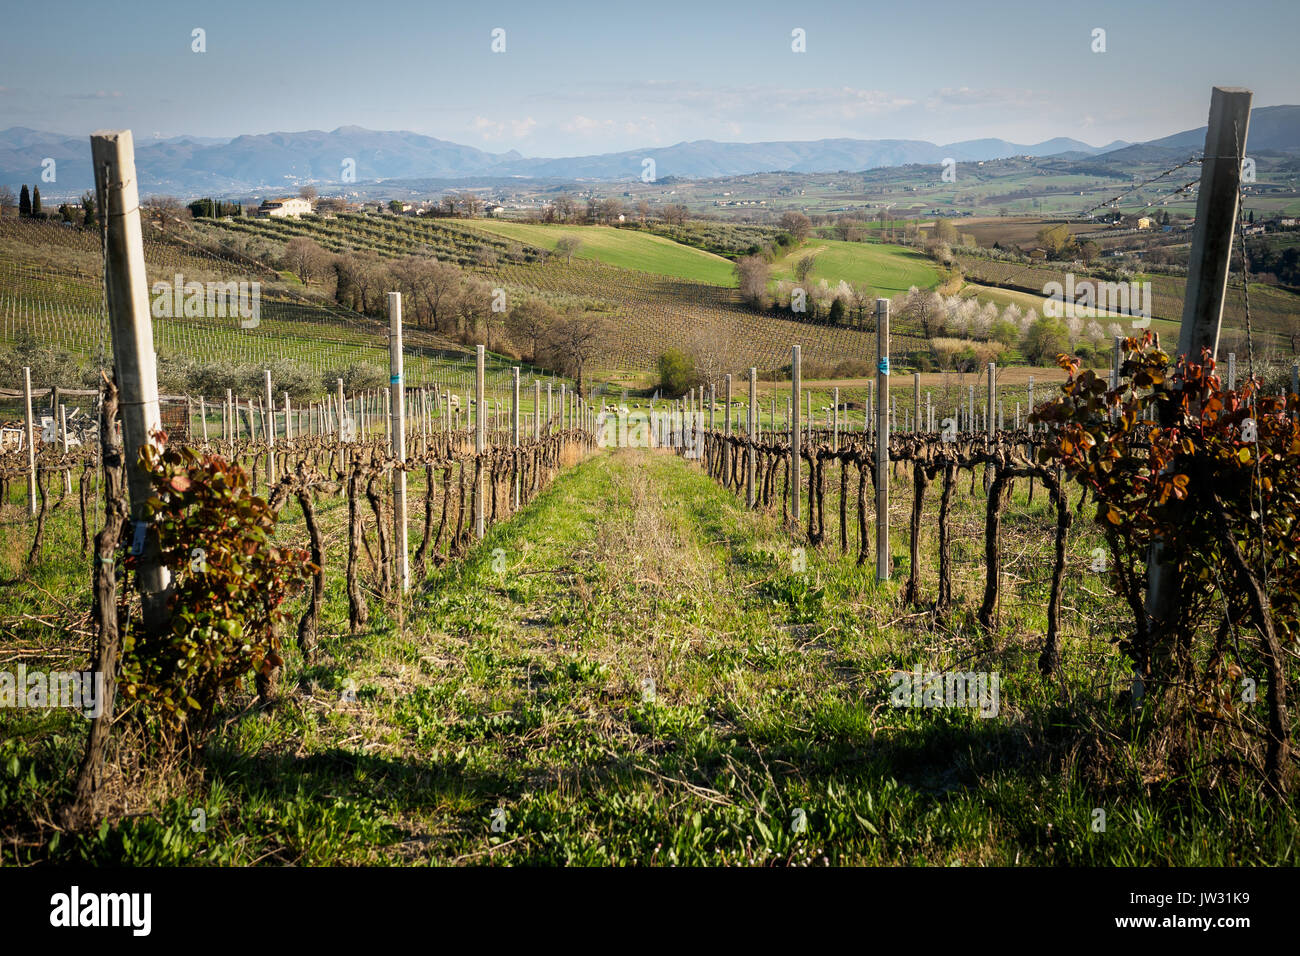 Vignes dans la zone de production de vin Sagrantino près de la ville de Montefalco dans la région de l'Ombrie (Italie). Banque D'Images